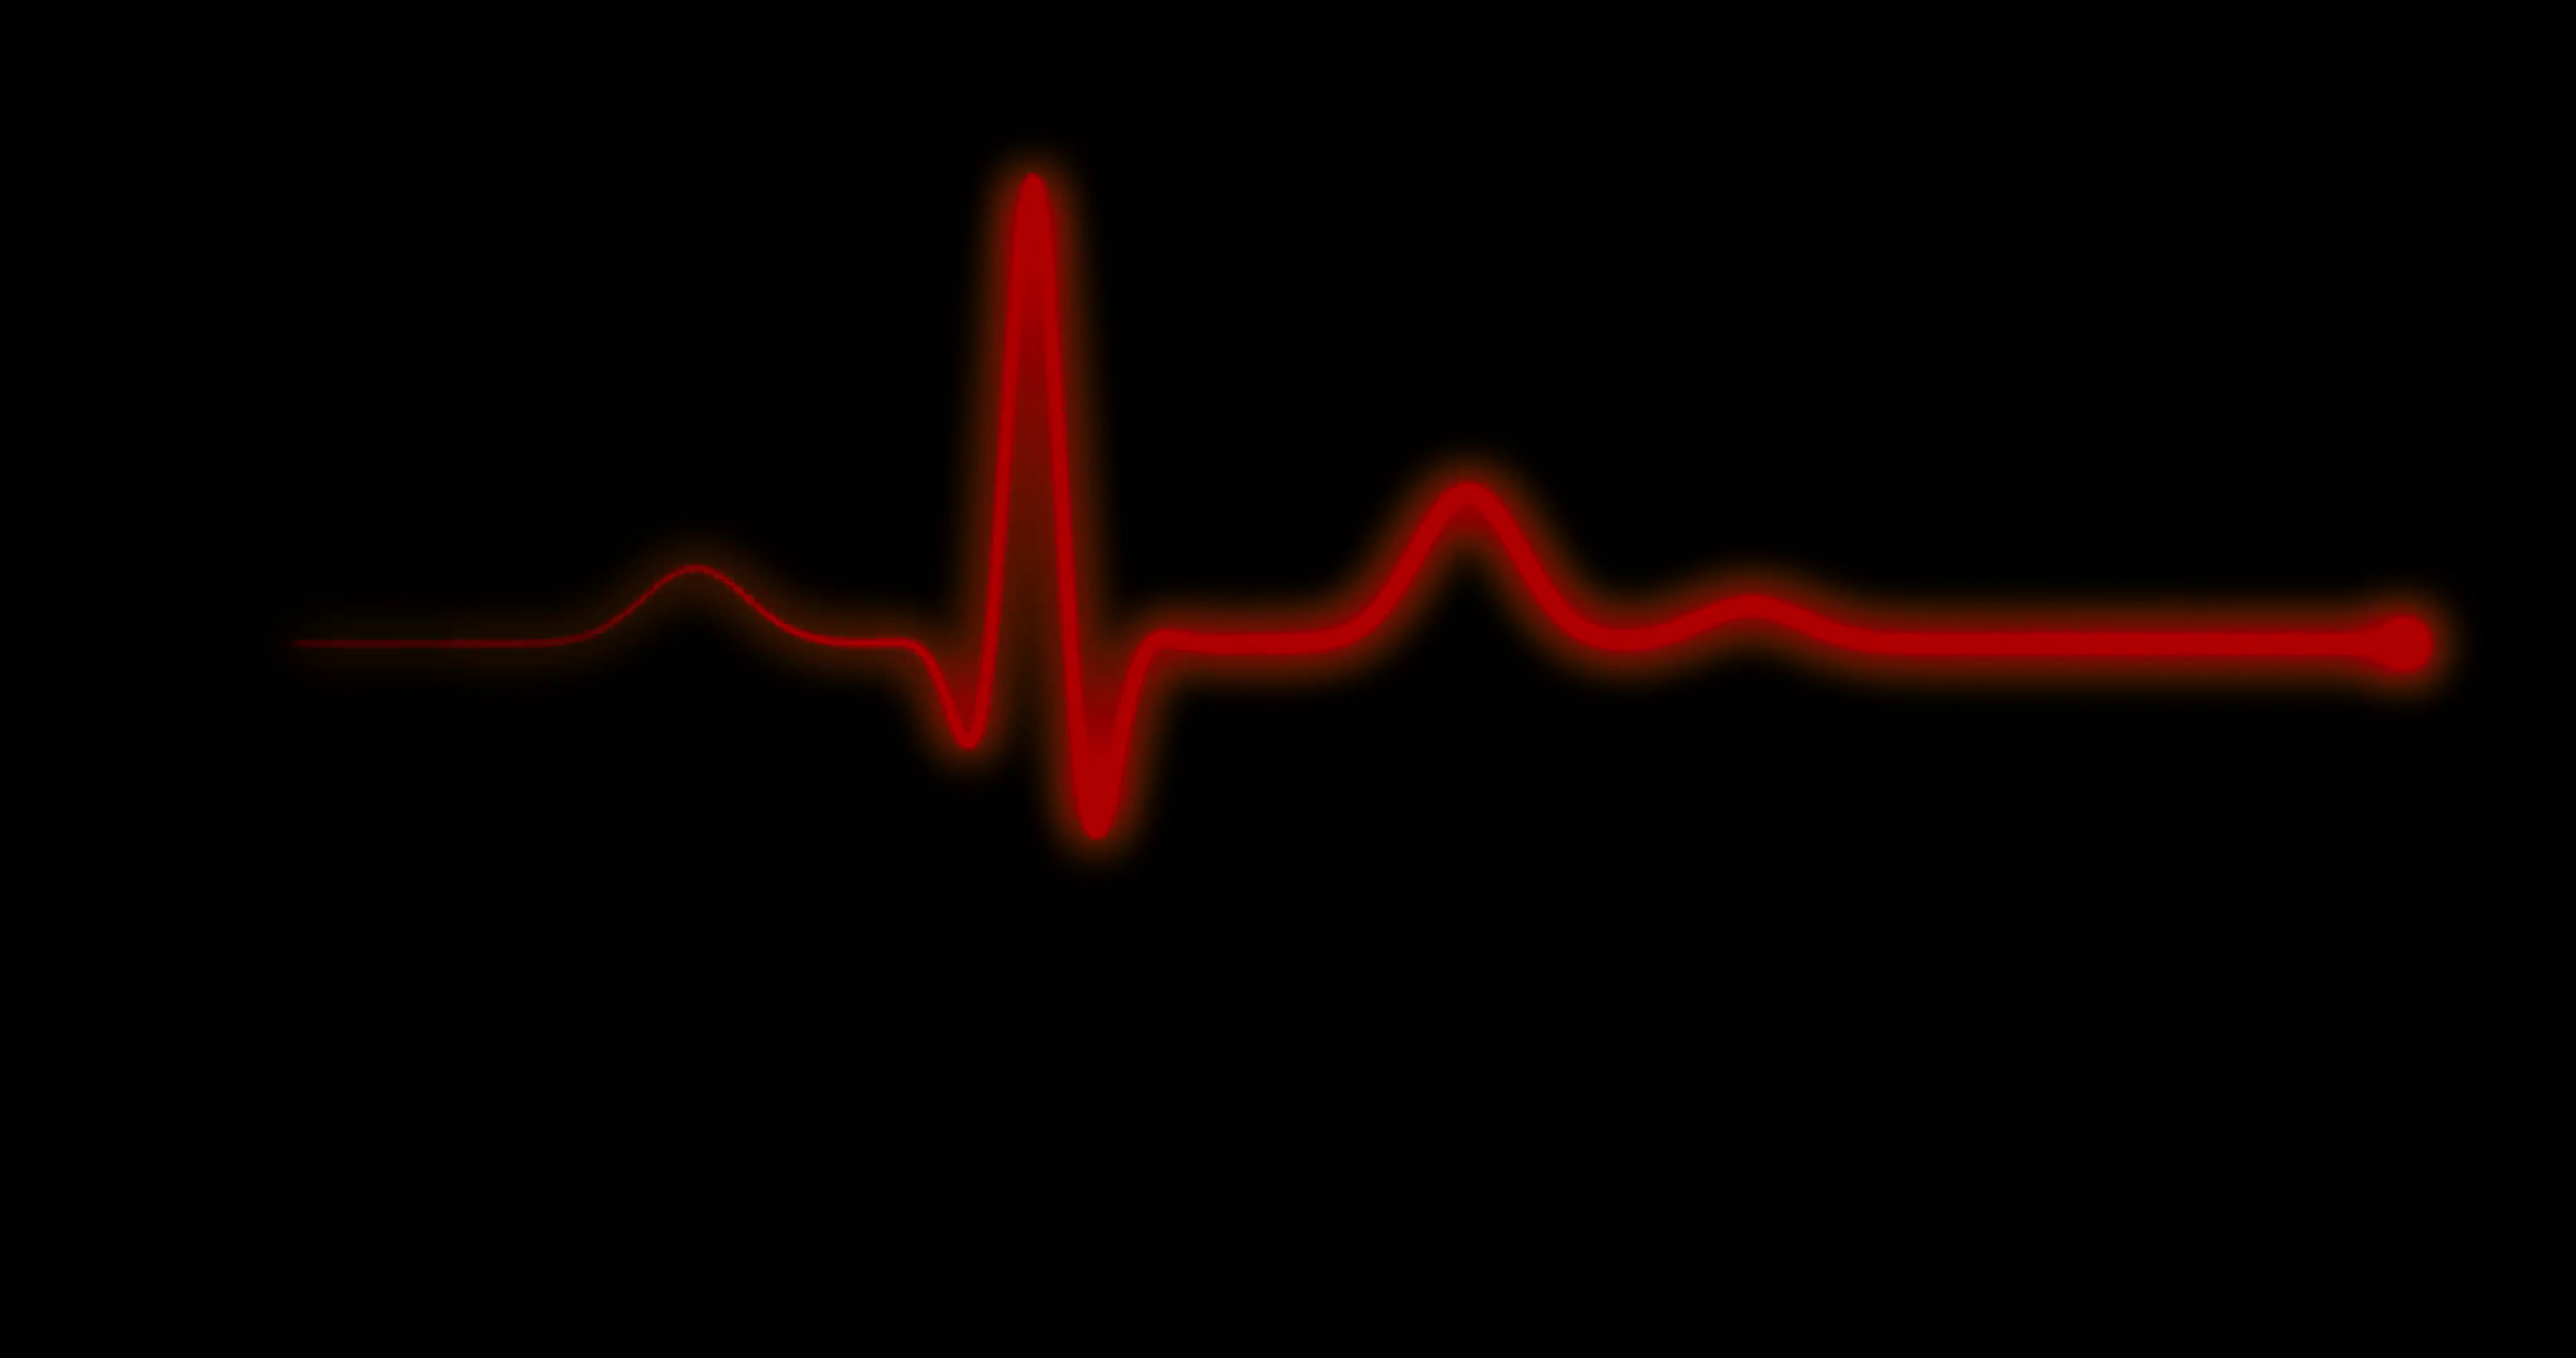 Эффект сердцебиения. Кардиограмма остановки сердца. Остановка сердца на ЭКГ. Пульс остановка сердца. ЭКГ на черном фоне.